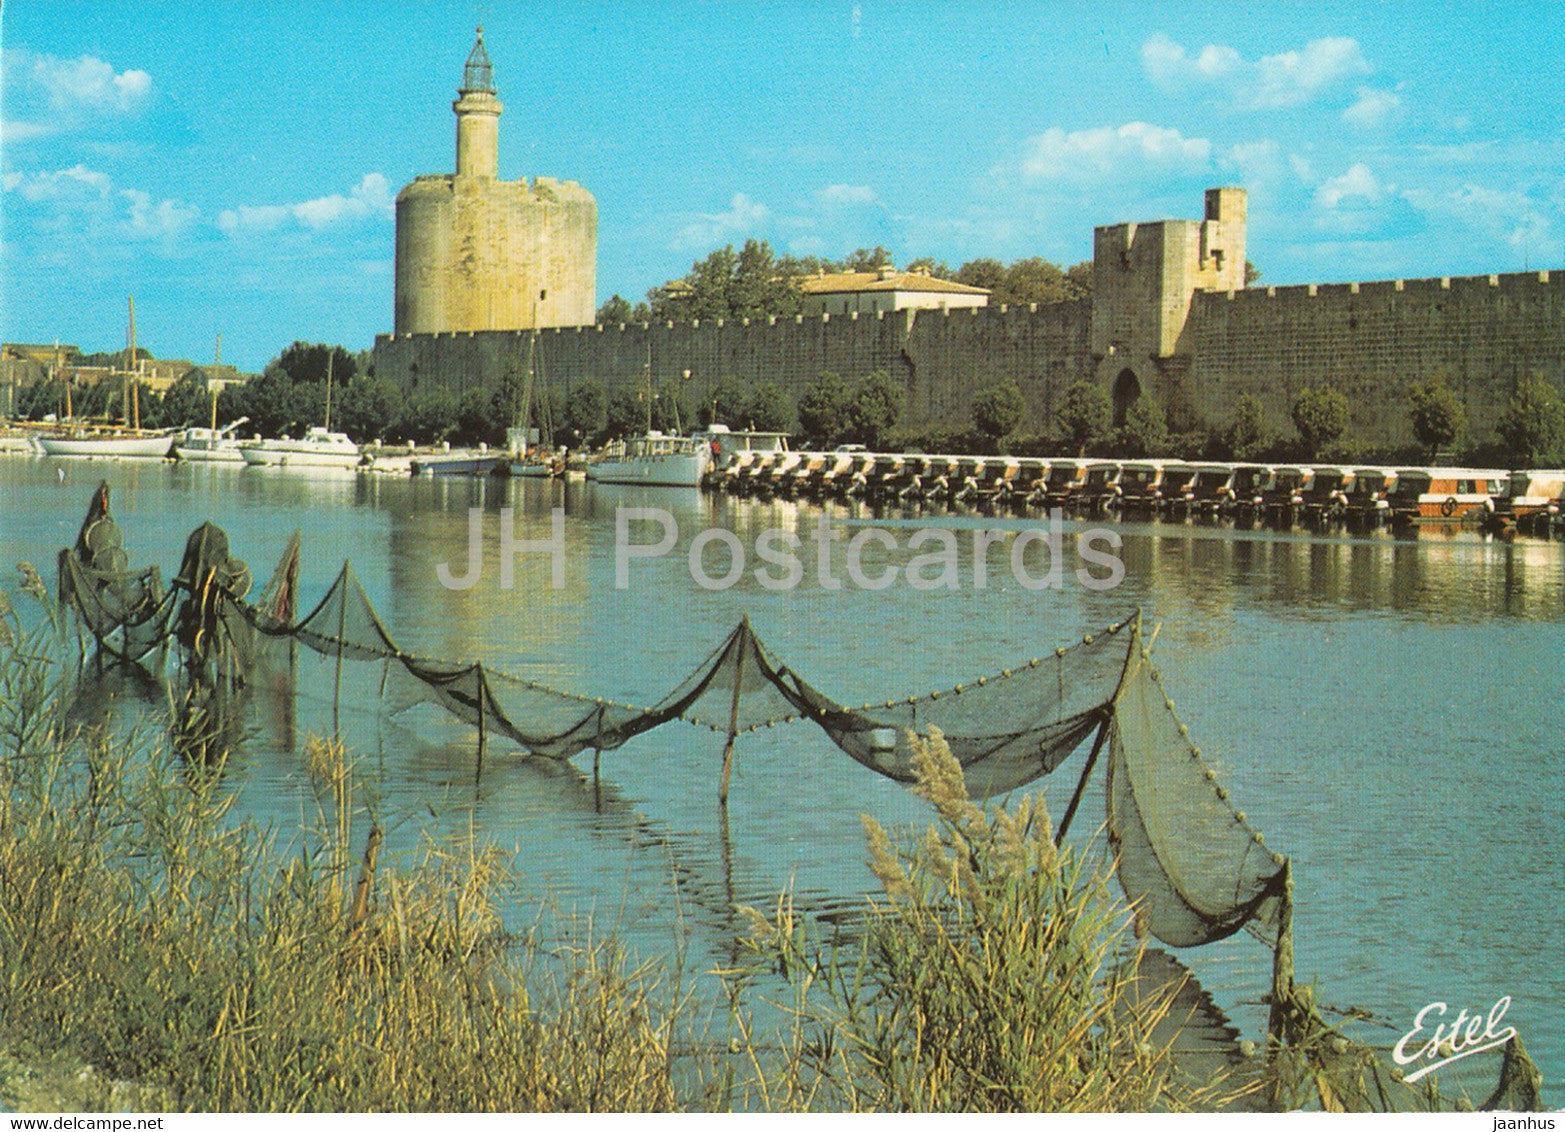 Aigues Mortes - Les Remparts - La Poterne des Remblais - France - unused - JH Postcards